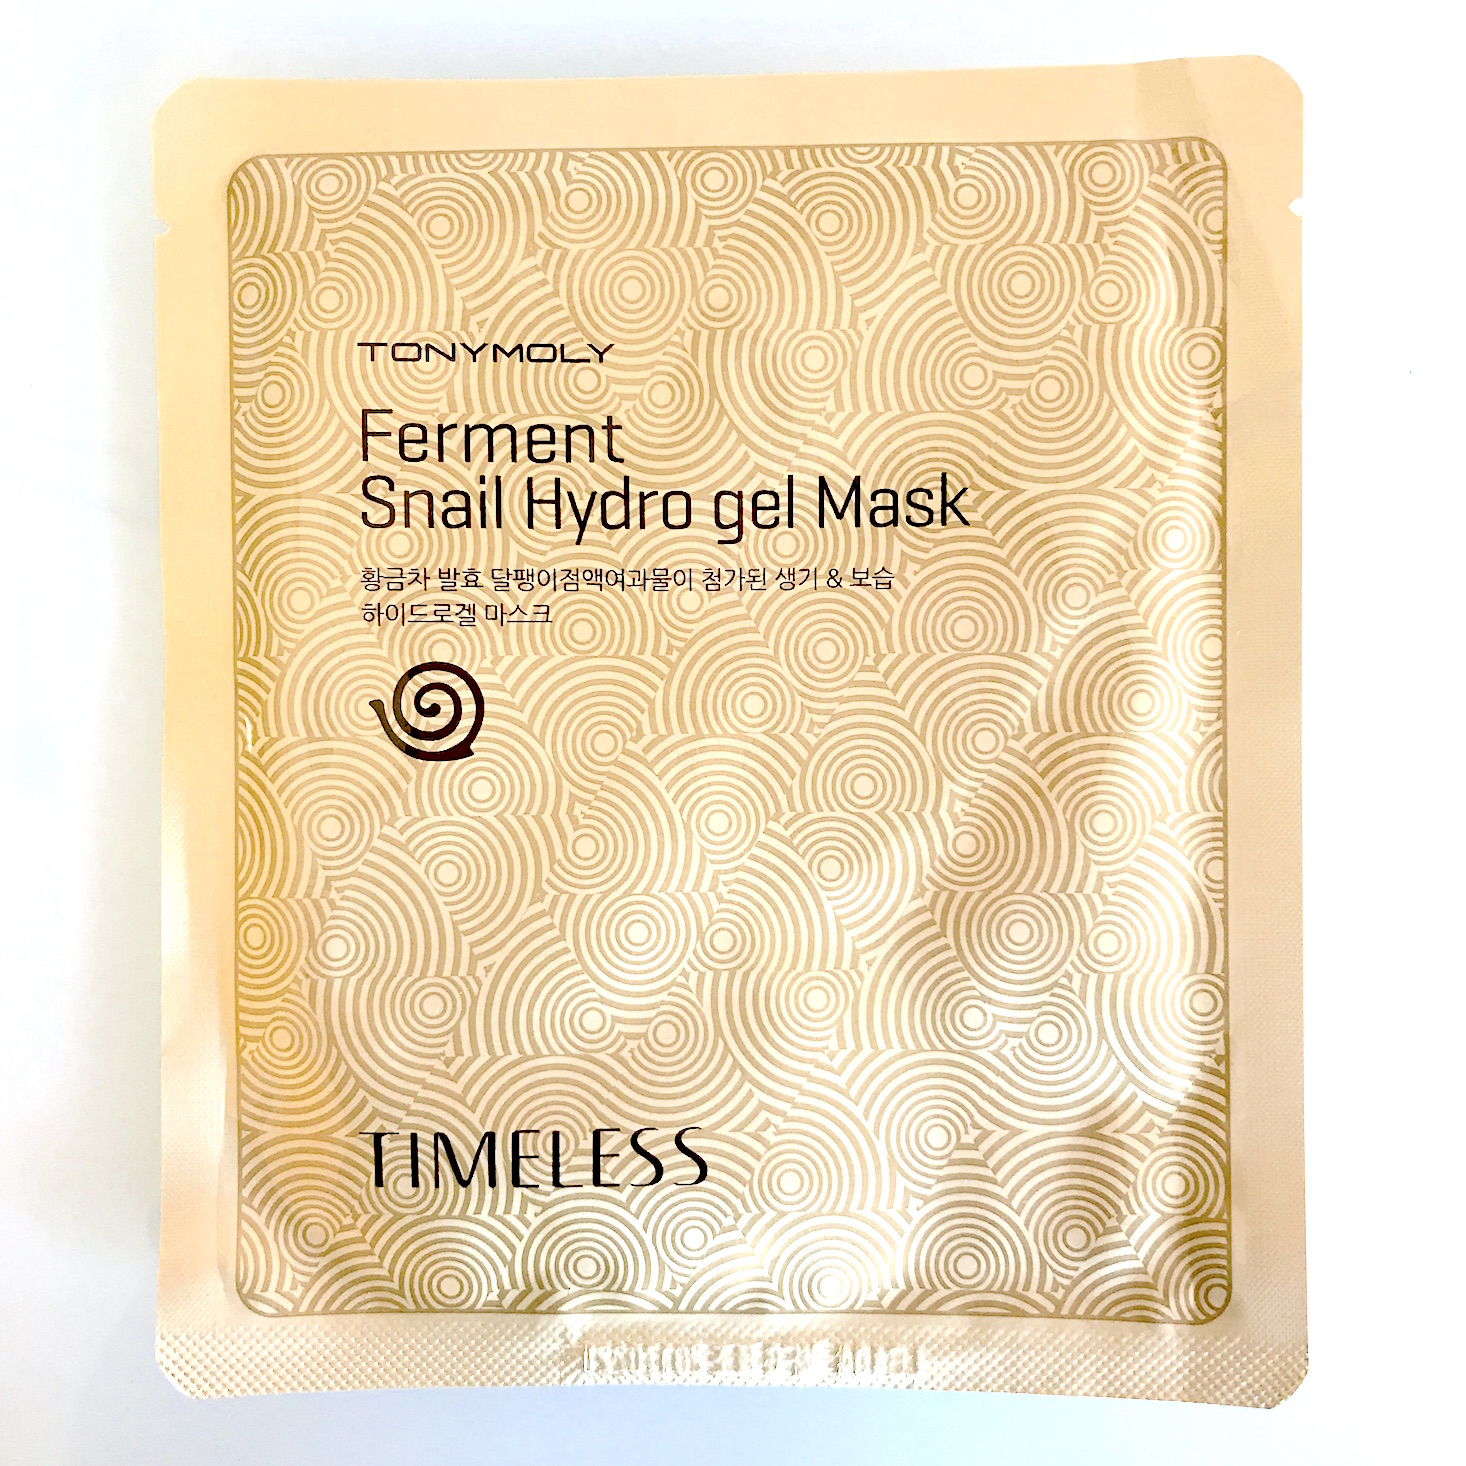 Mishimask January 2018 - snail mask